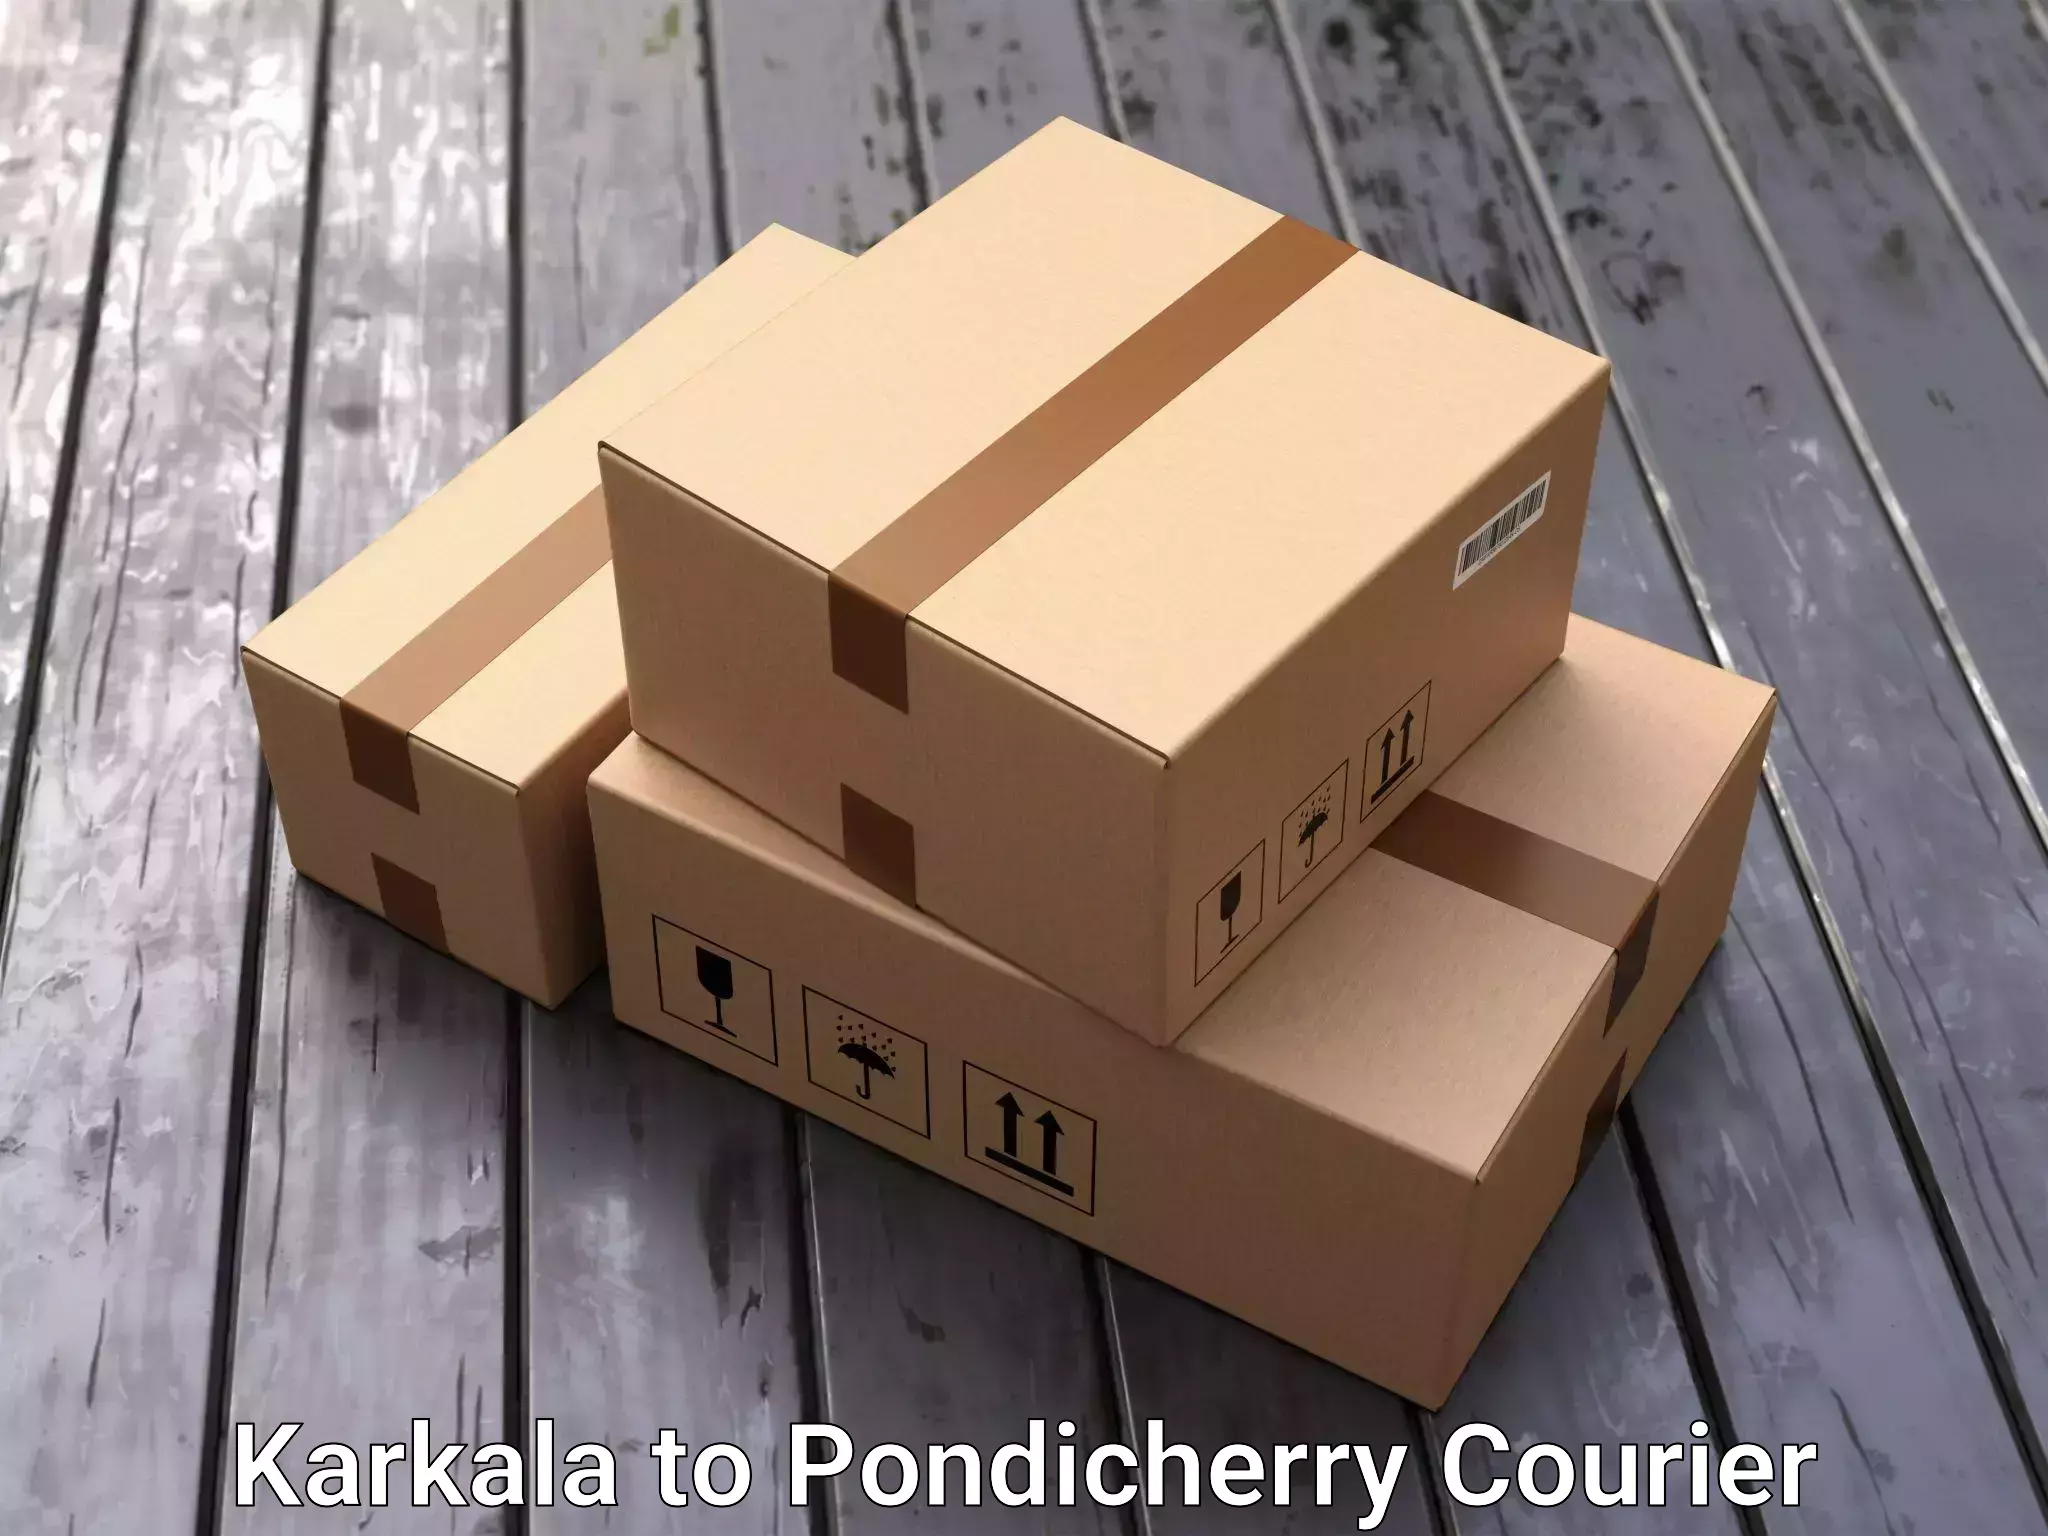 Furniture delivery service Karkala to Pondicherry University